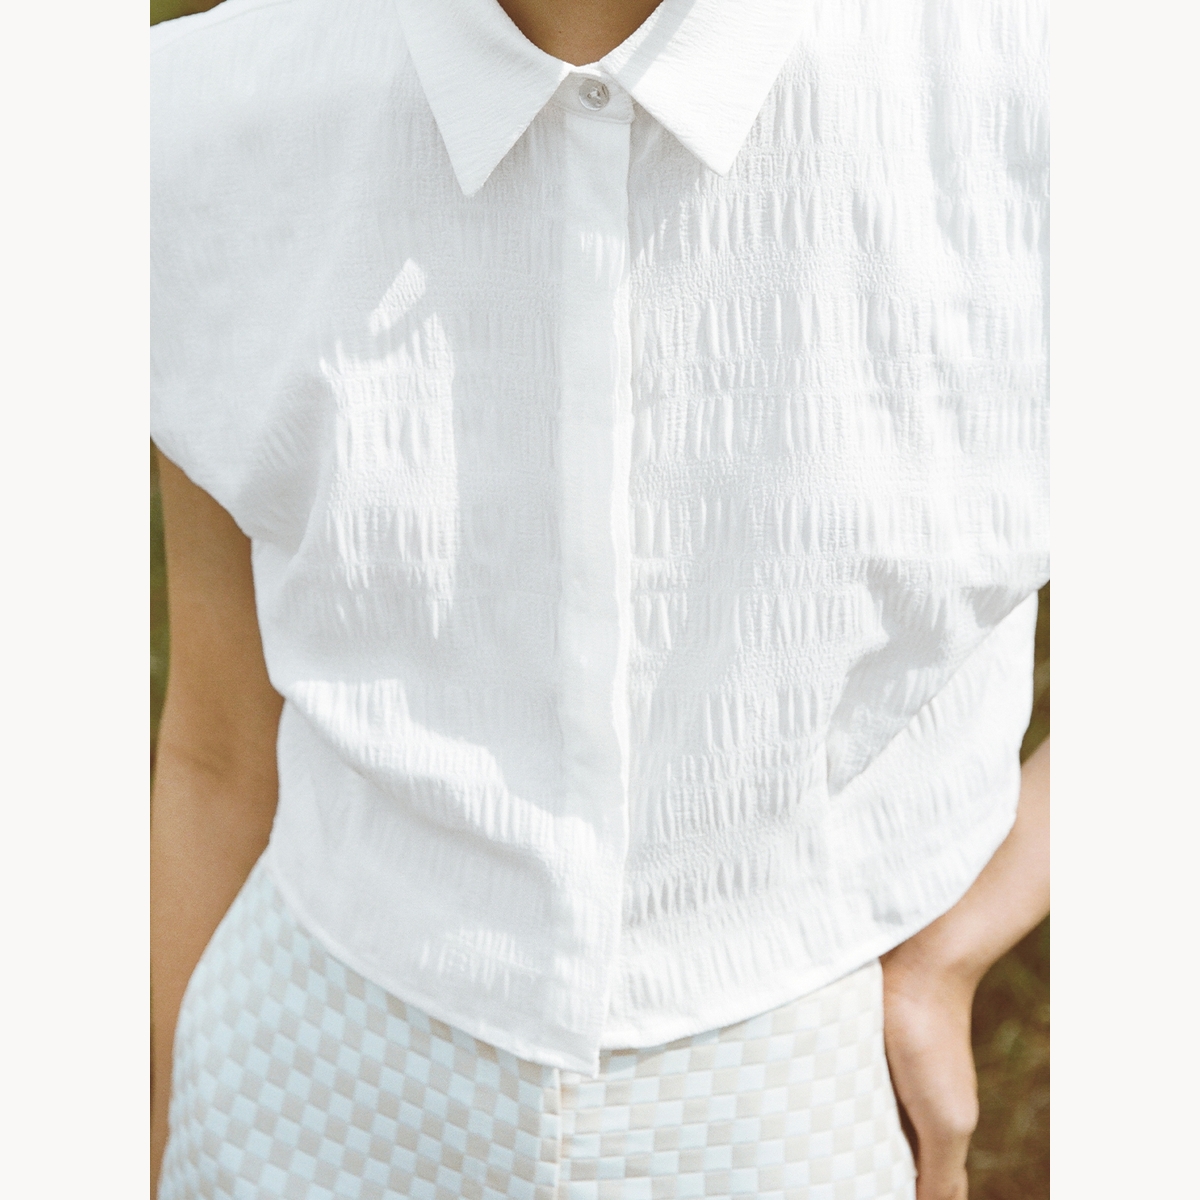 Pomelo Cropped Texture Button Up Top เสื้อตัวยาว ผู้หญิง